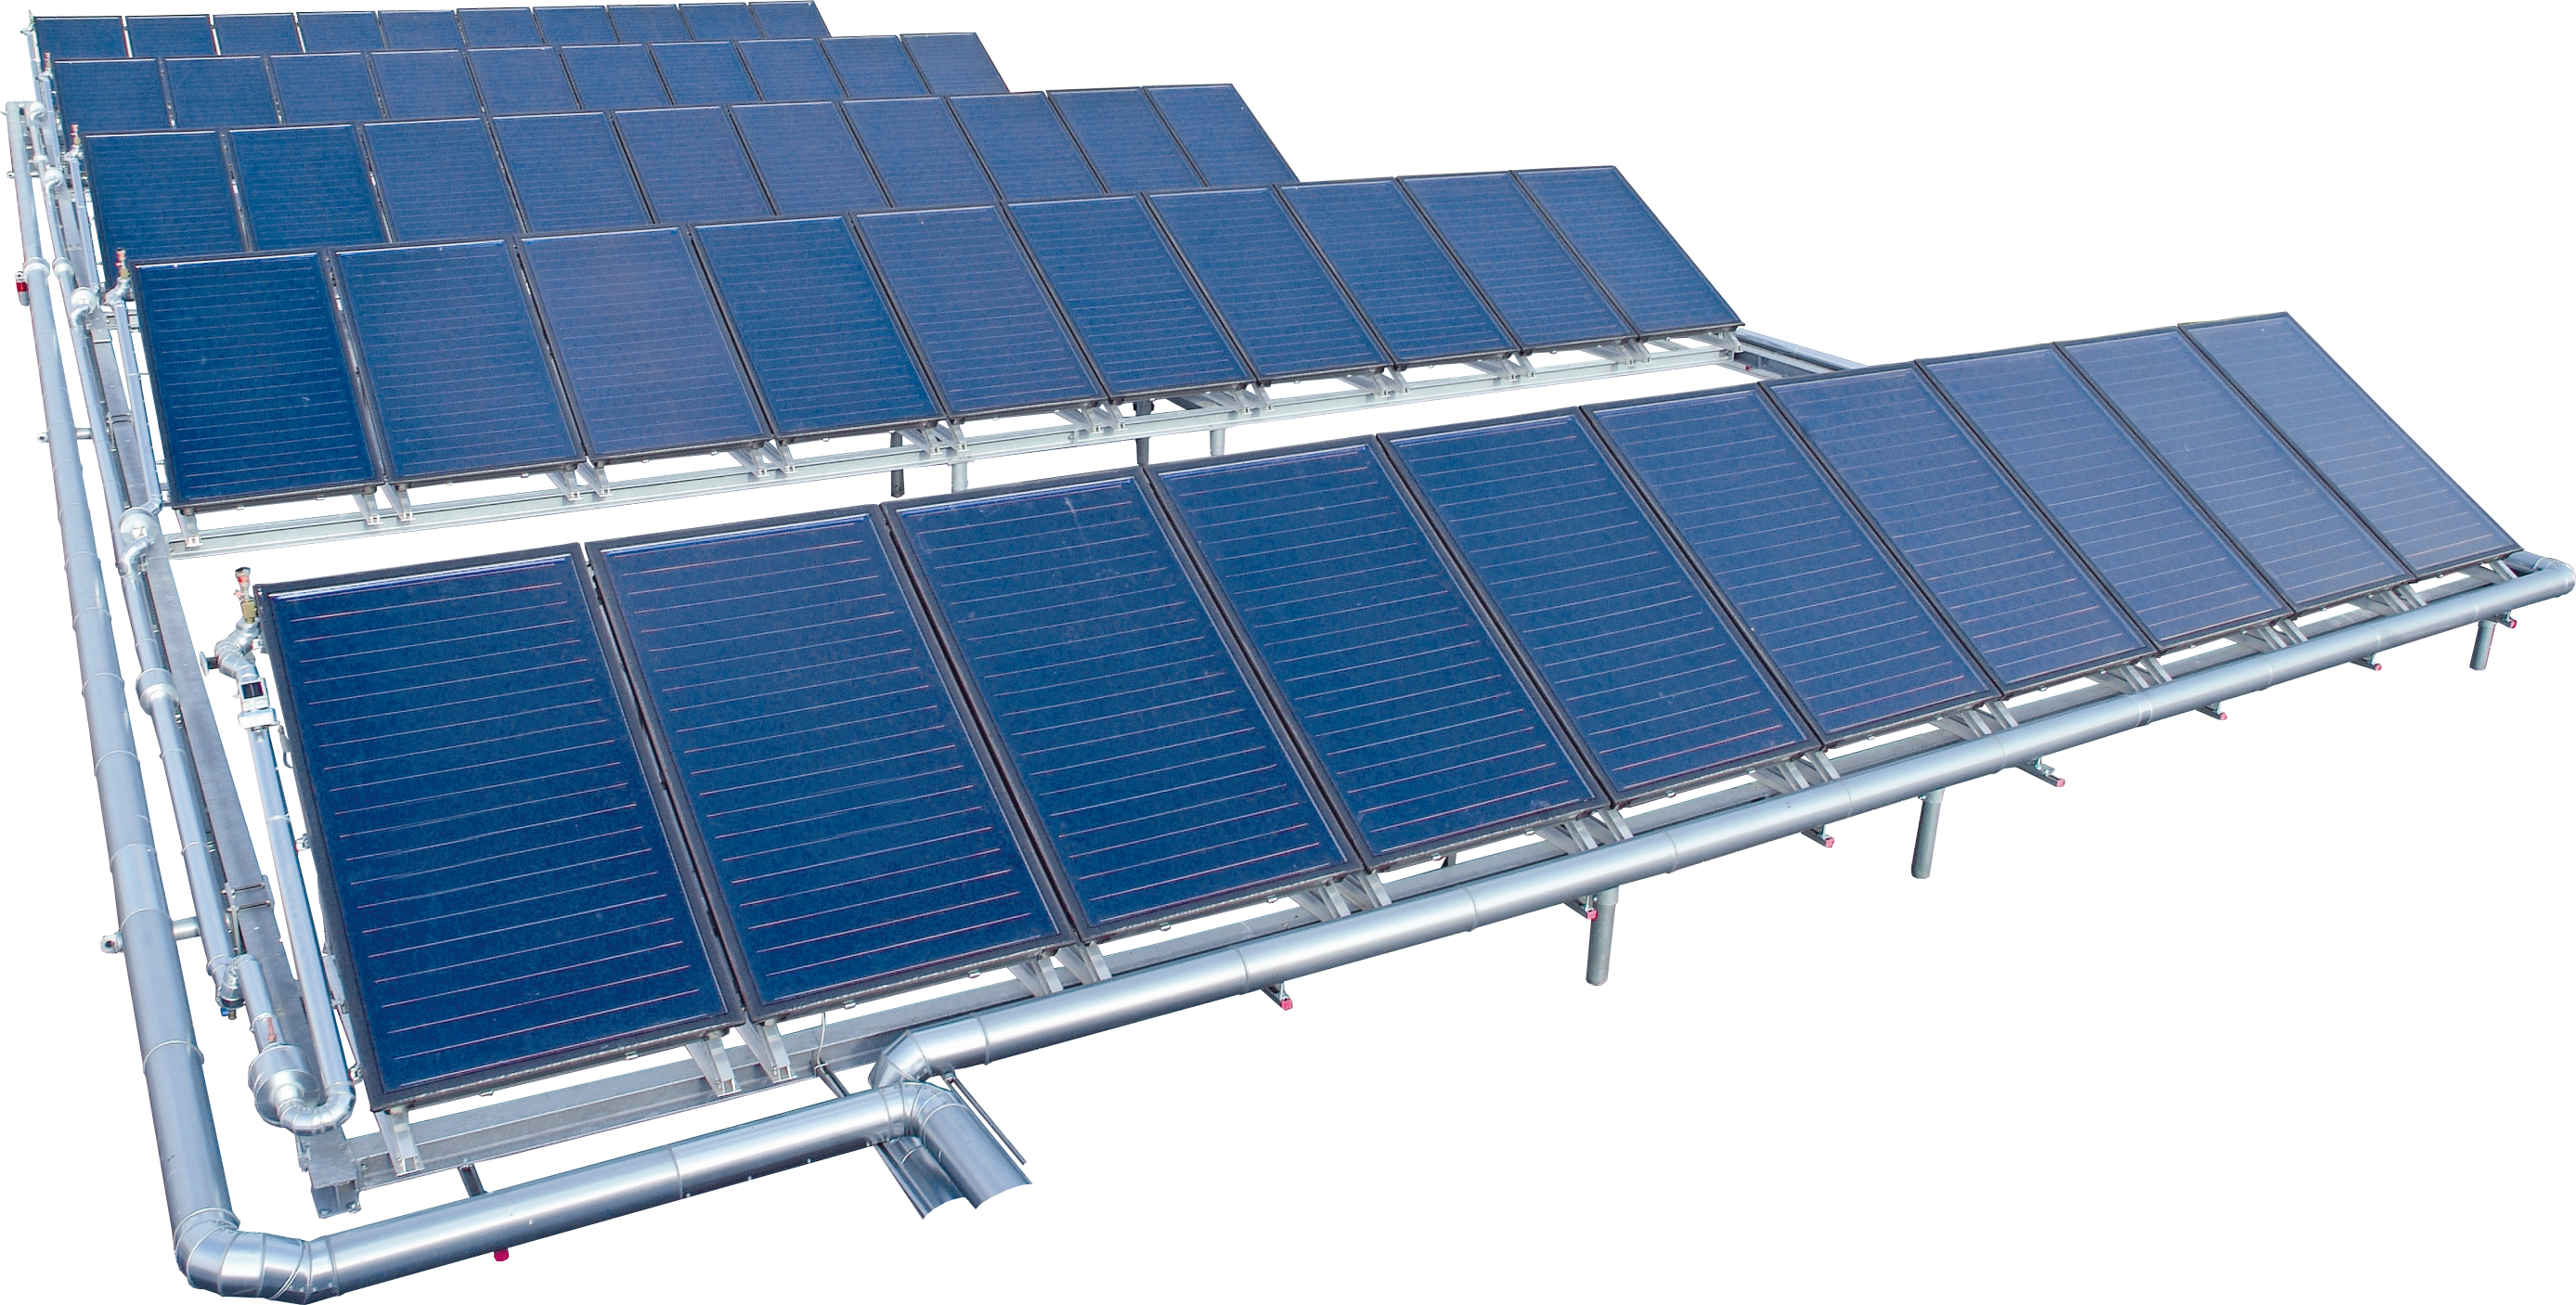 Instalaţii termice de mare capacitate pe bază de energie solară